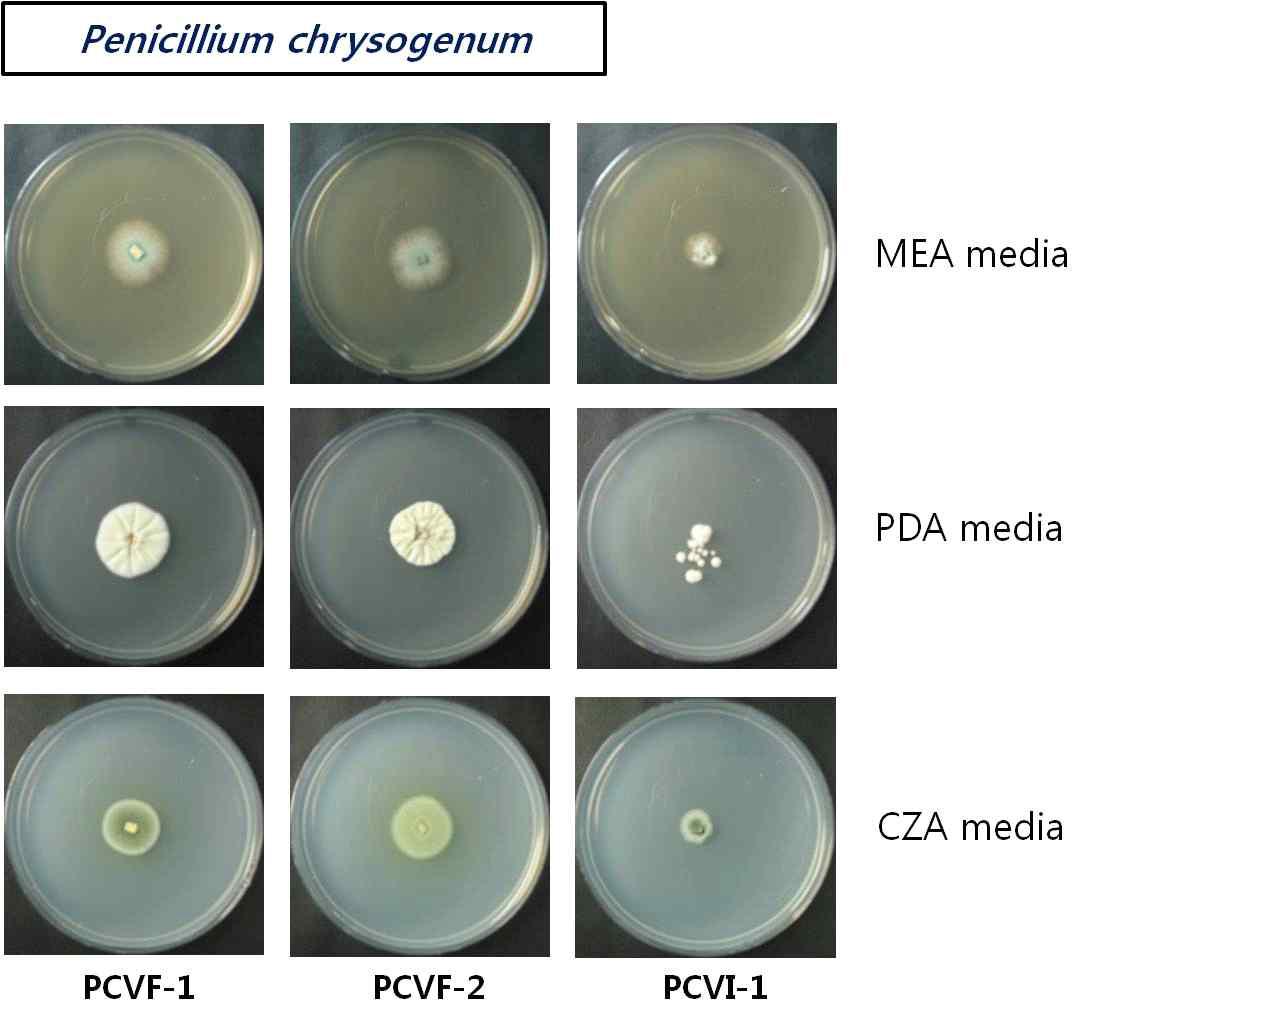 Penicillium spp. viro-control 균주의 다양한 배양배지에서의 형태적 관찰. PCVF-1, PCVF-2; virus free strain, PCVI; virus-infected isogenic strain